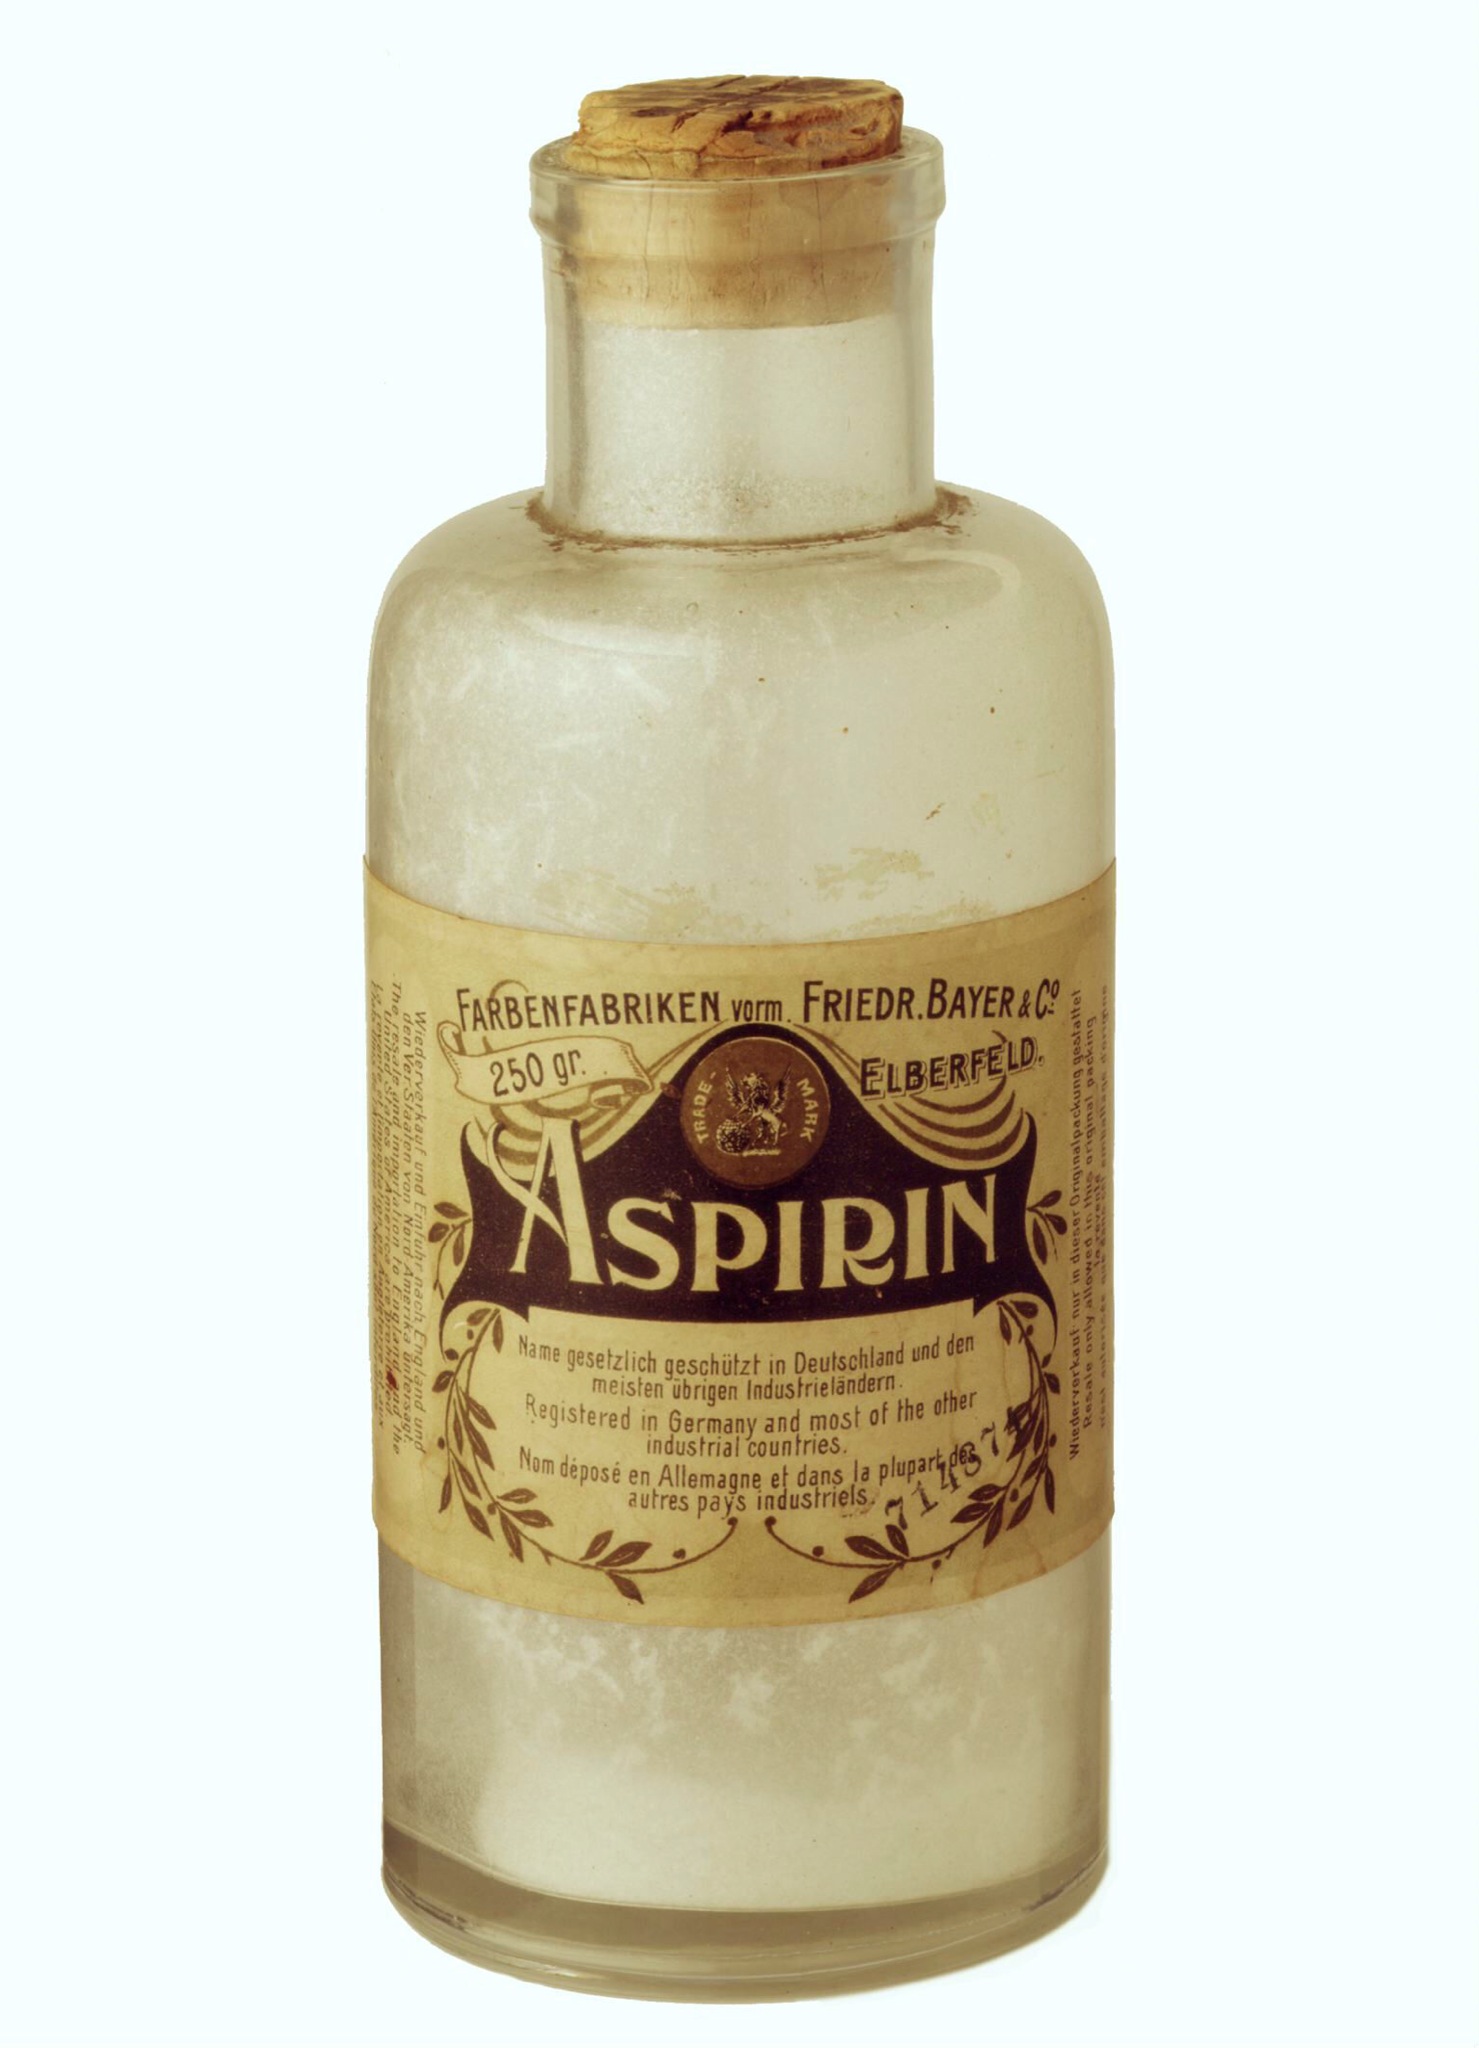 Foto de um frasco de aspirina da Bayer.